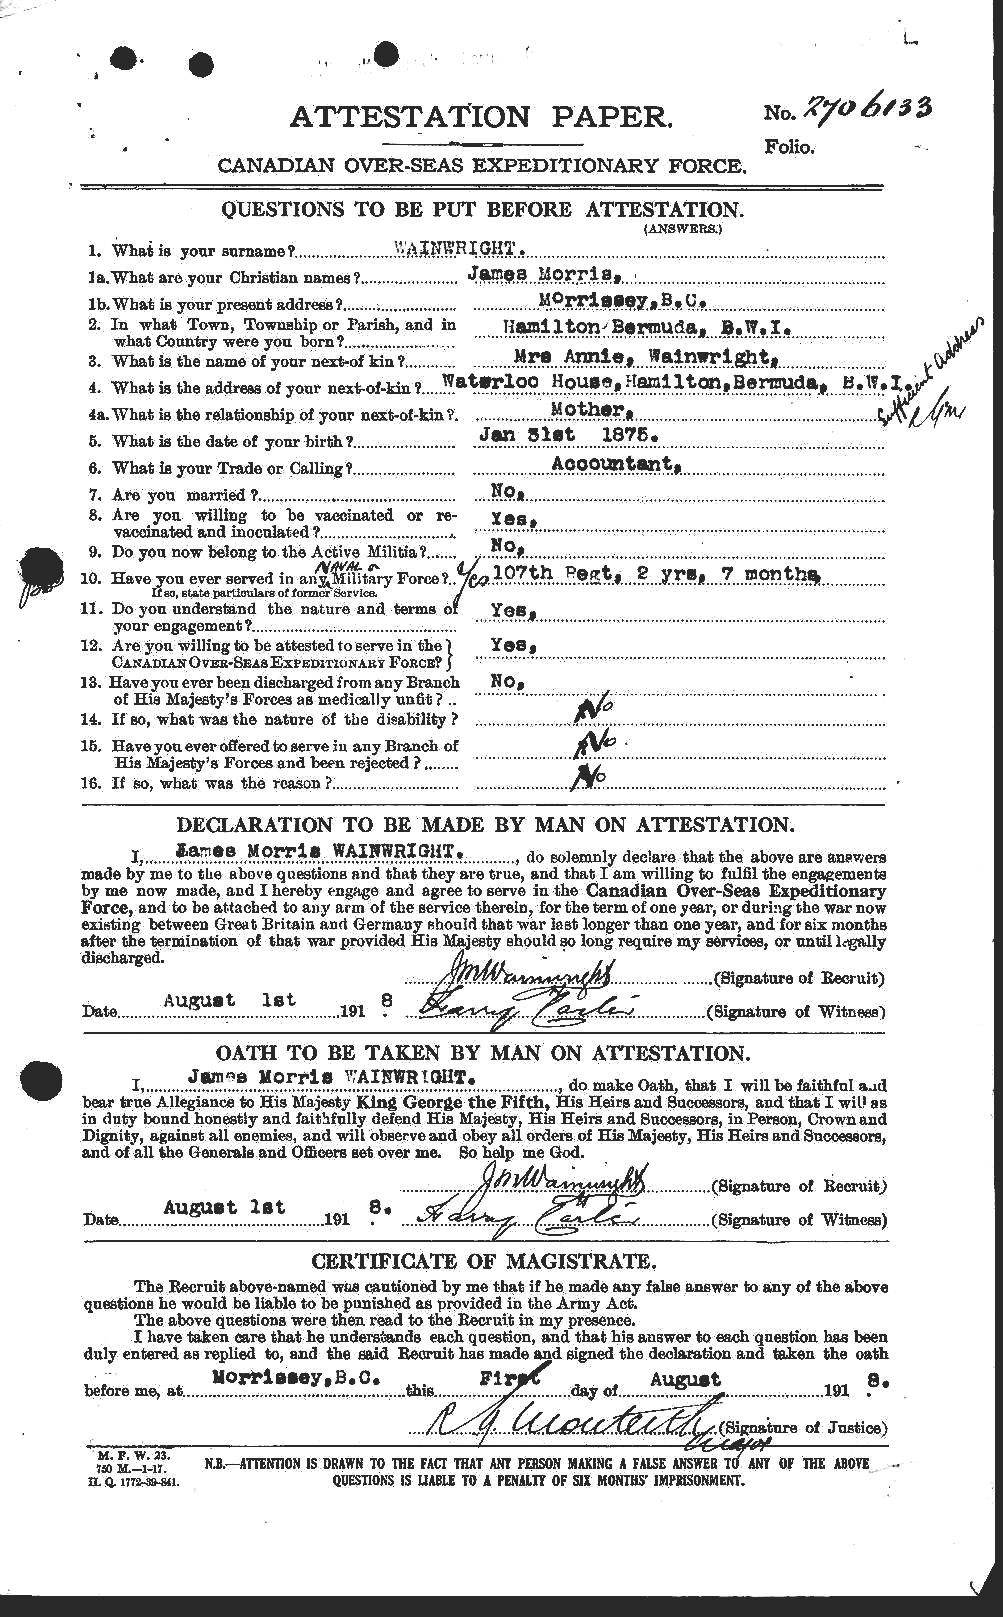 Dossiers du Personnel de la Première Guerre mondiale - CEC 654186a